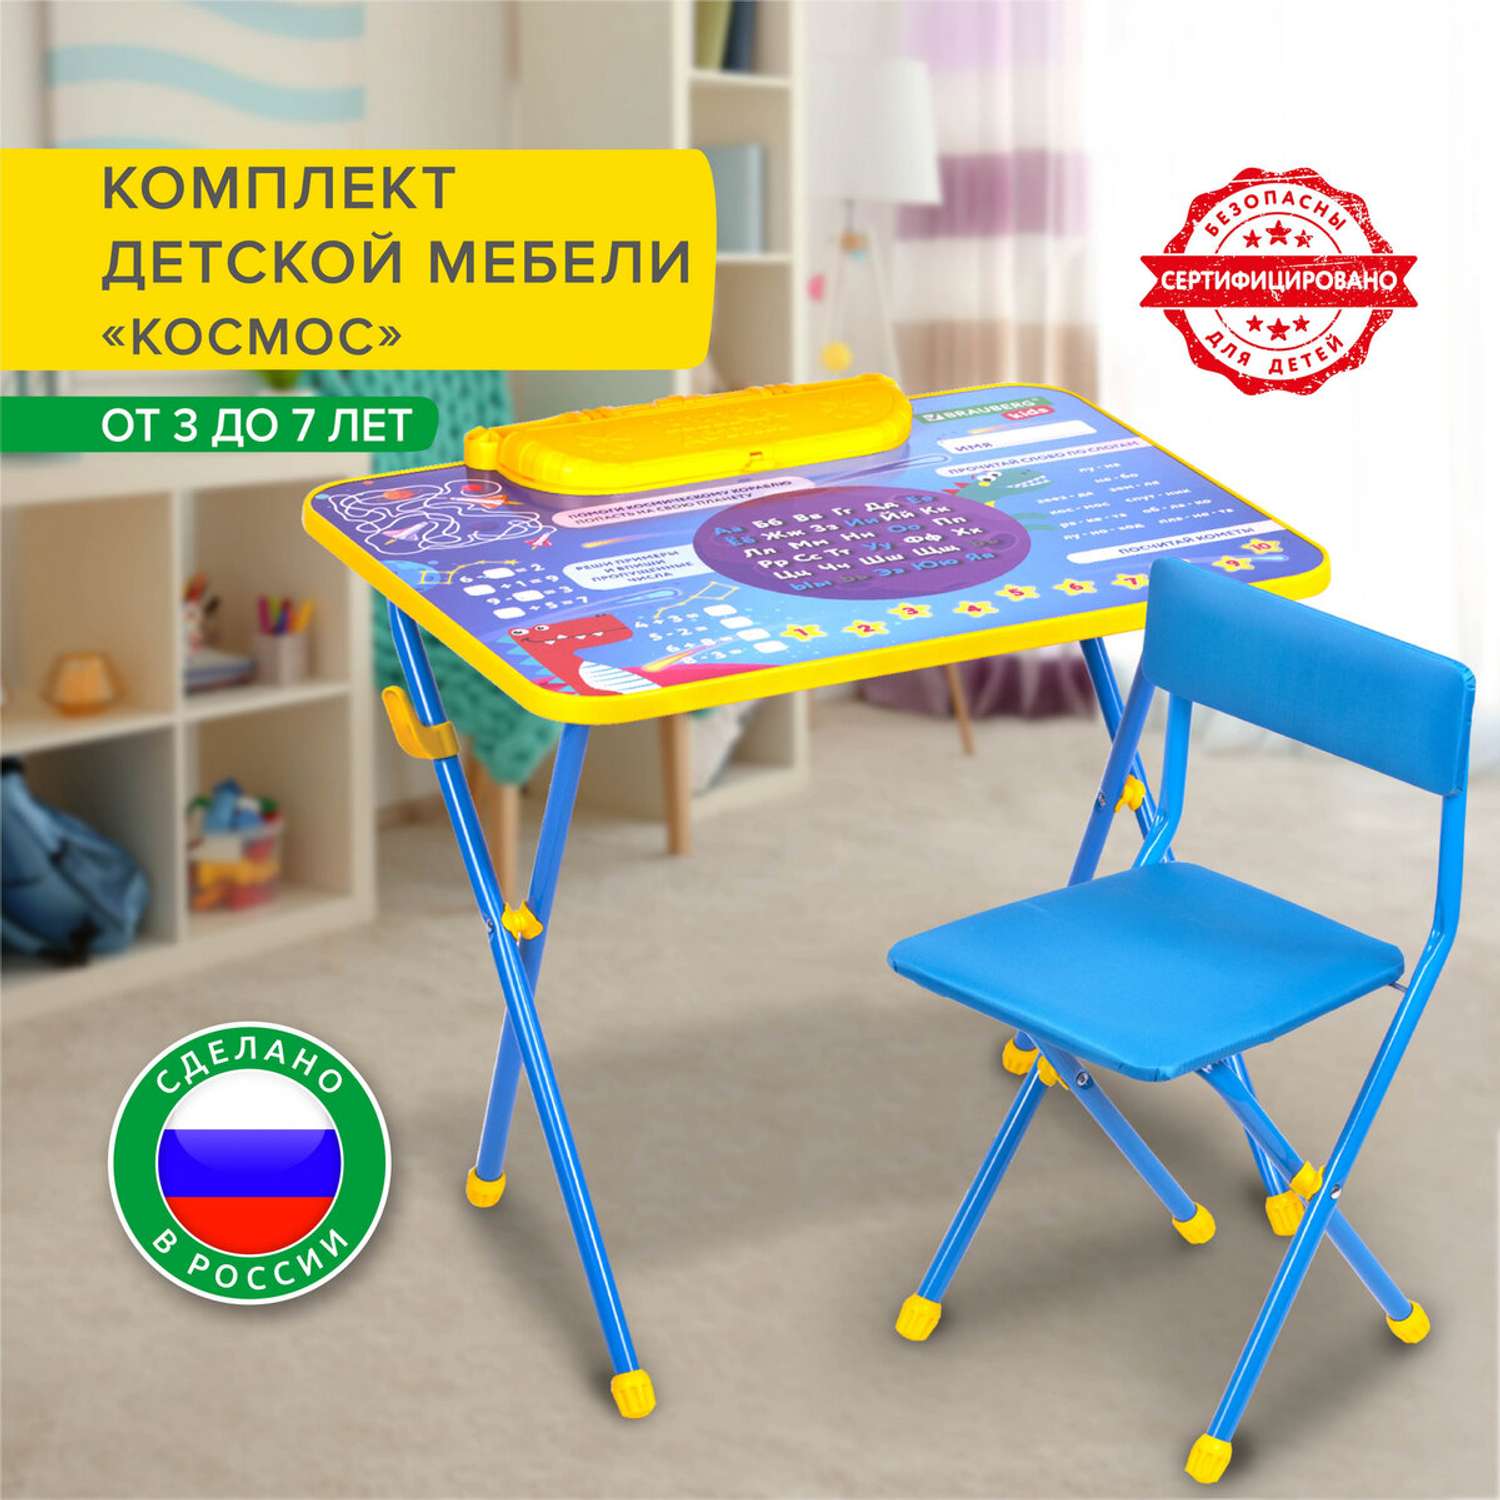 Купить детский стол, стул для ребенка недорого в Калуге - каталог с фото и ценами